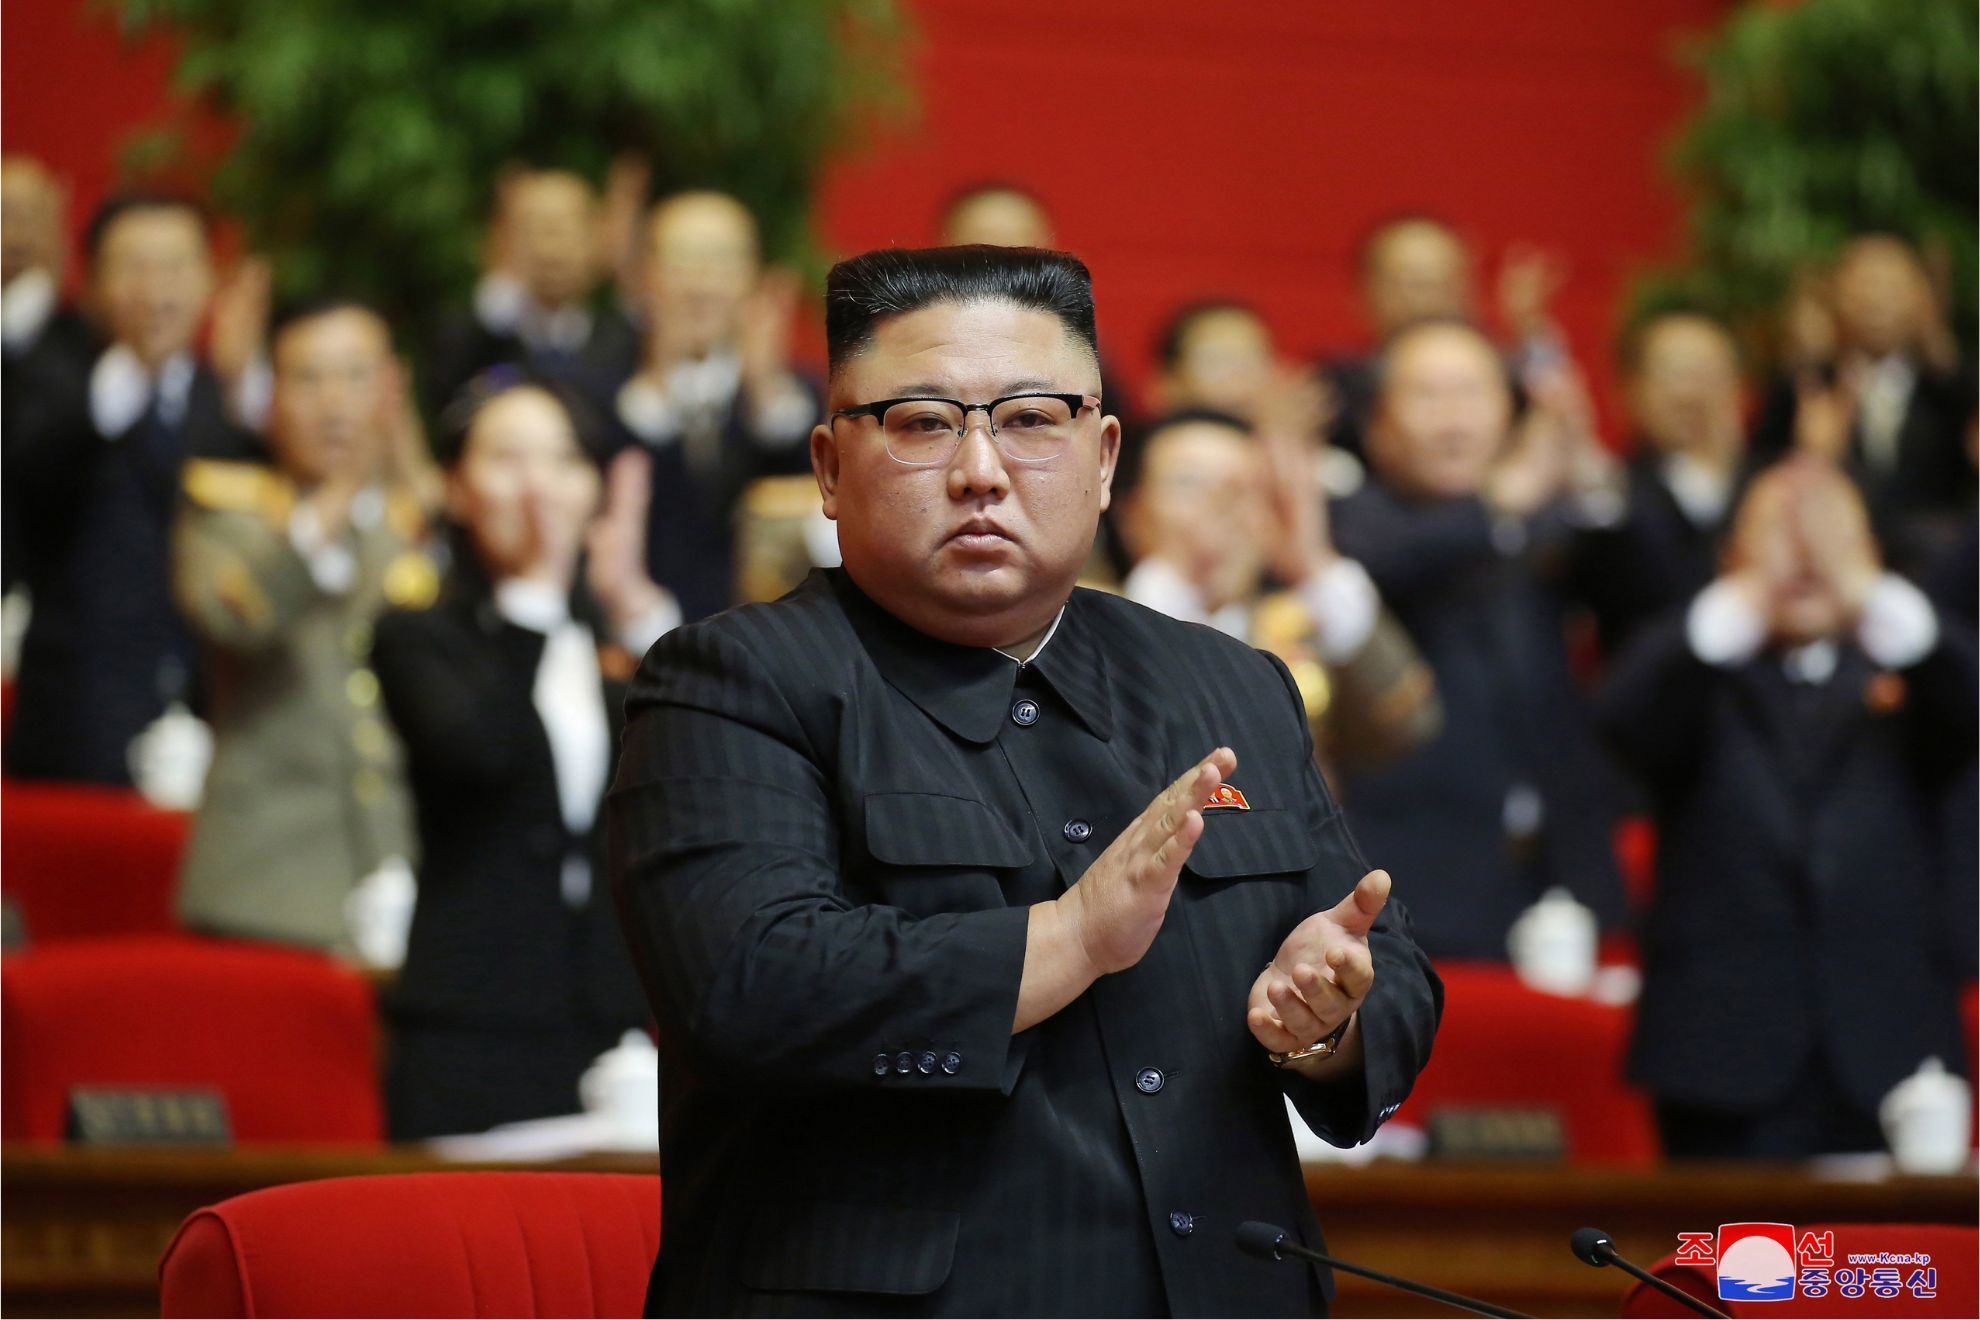 La inteligencia surcoreana alerta del estado de salud de Kim Jong Un: padece insomnio, y es adicto al tabaco y el alcohol